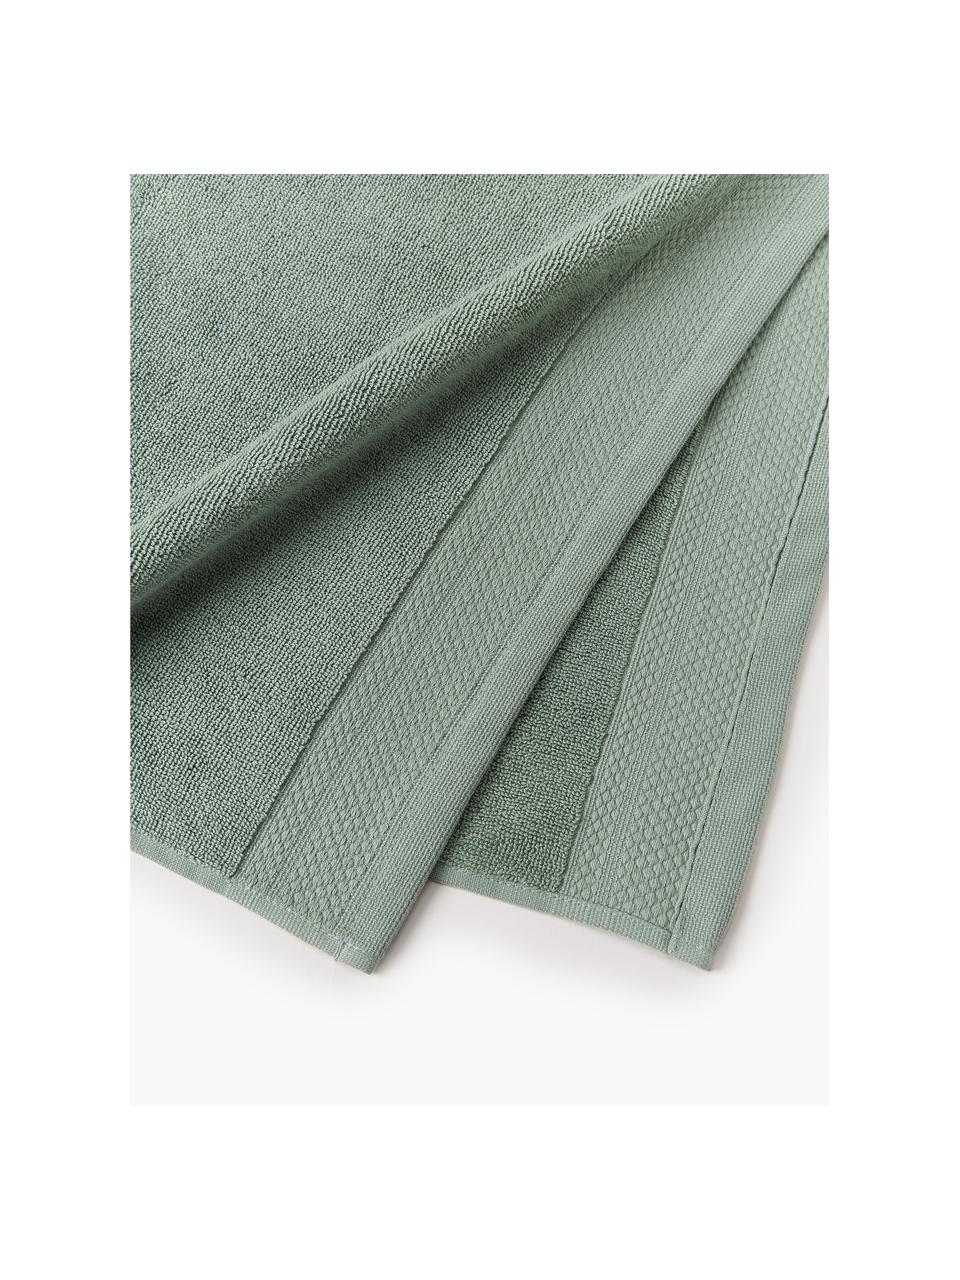 Komplet ręczników z bawełny organicznej Premium, różne rozmiary, Szałwiowy zielony, 3 elem. (ręcznik dla gości, ręcznik do rąk, ręcznik kąpielowy)